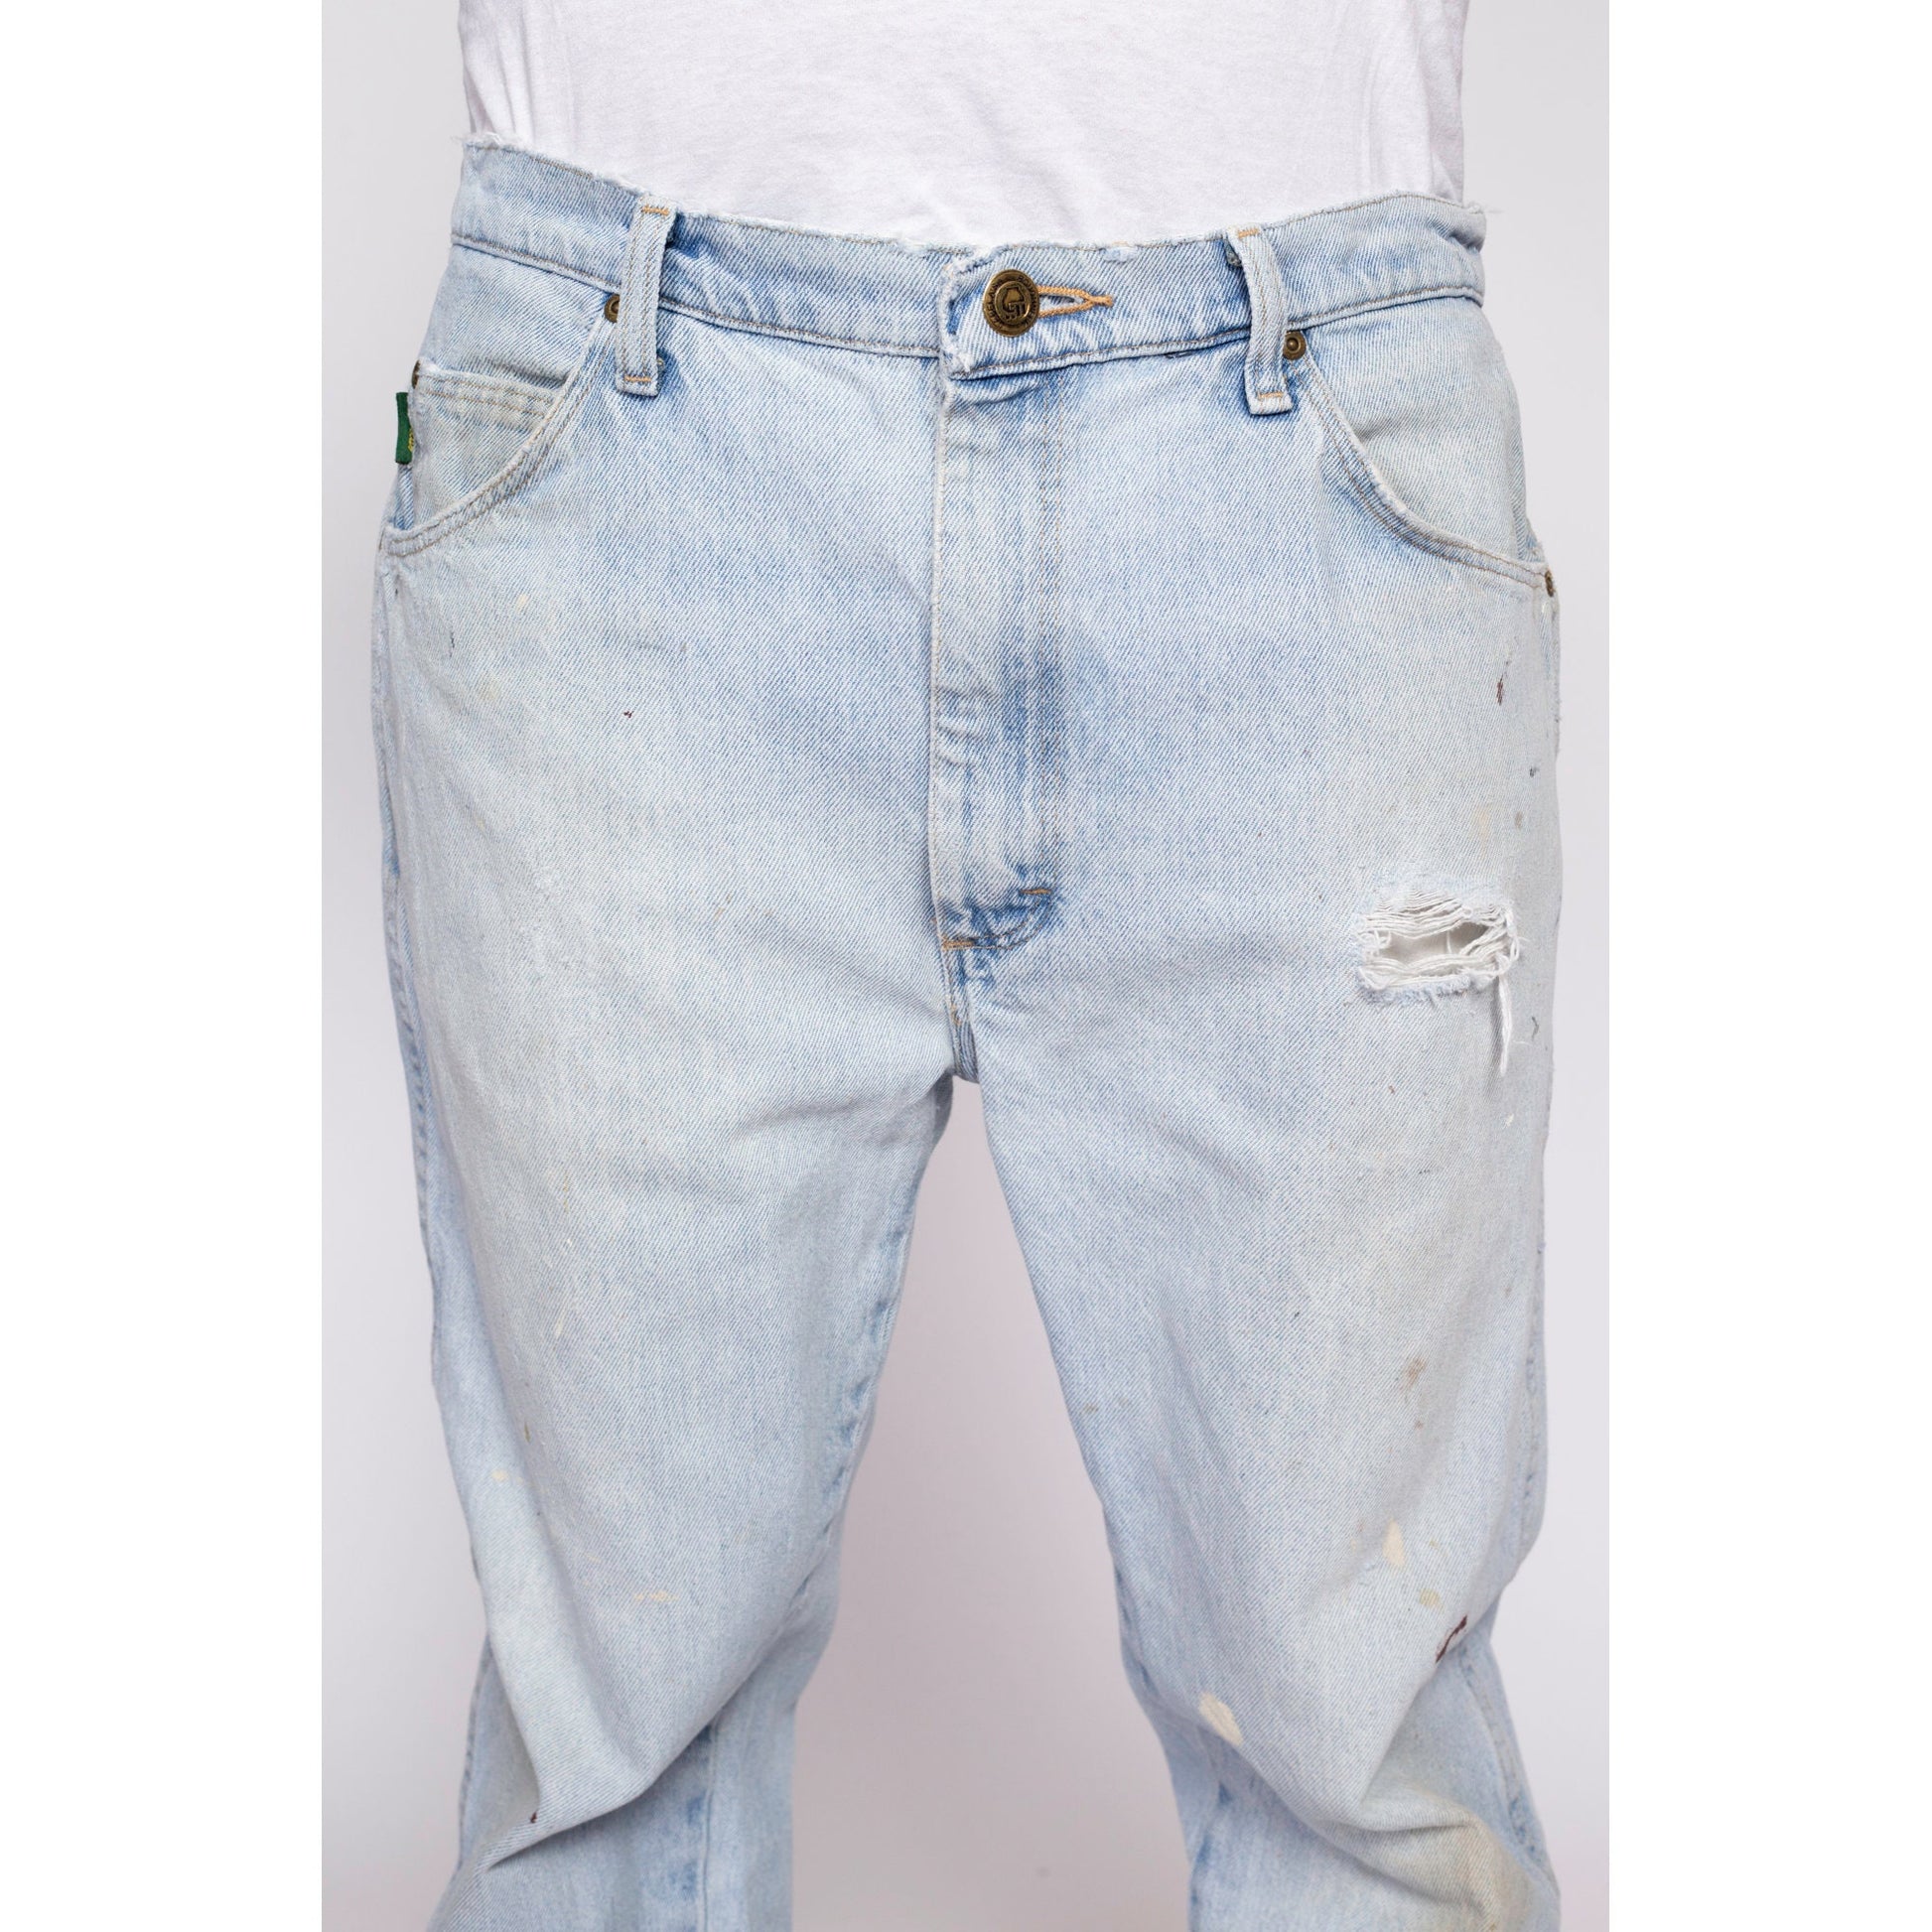 90s Cabela's Distressed Light Wash Jeans - 36x32 – Flying Apple Vintage